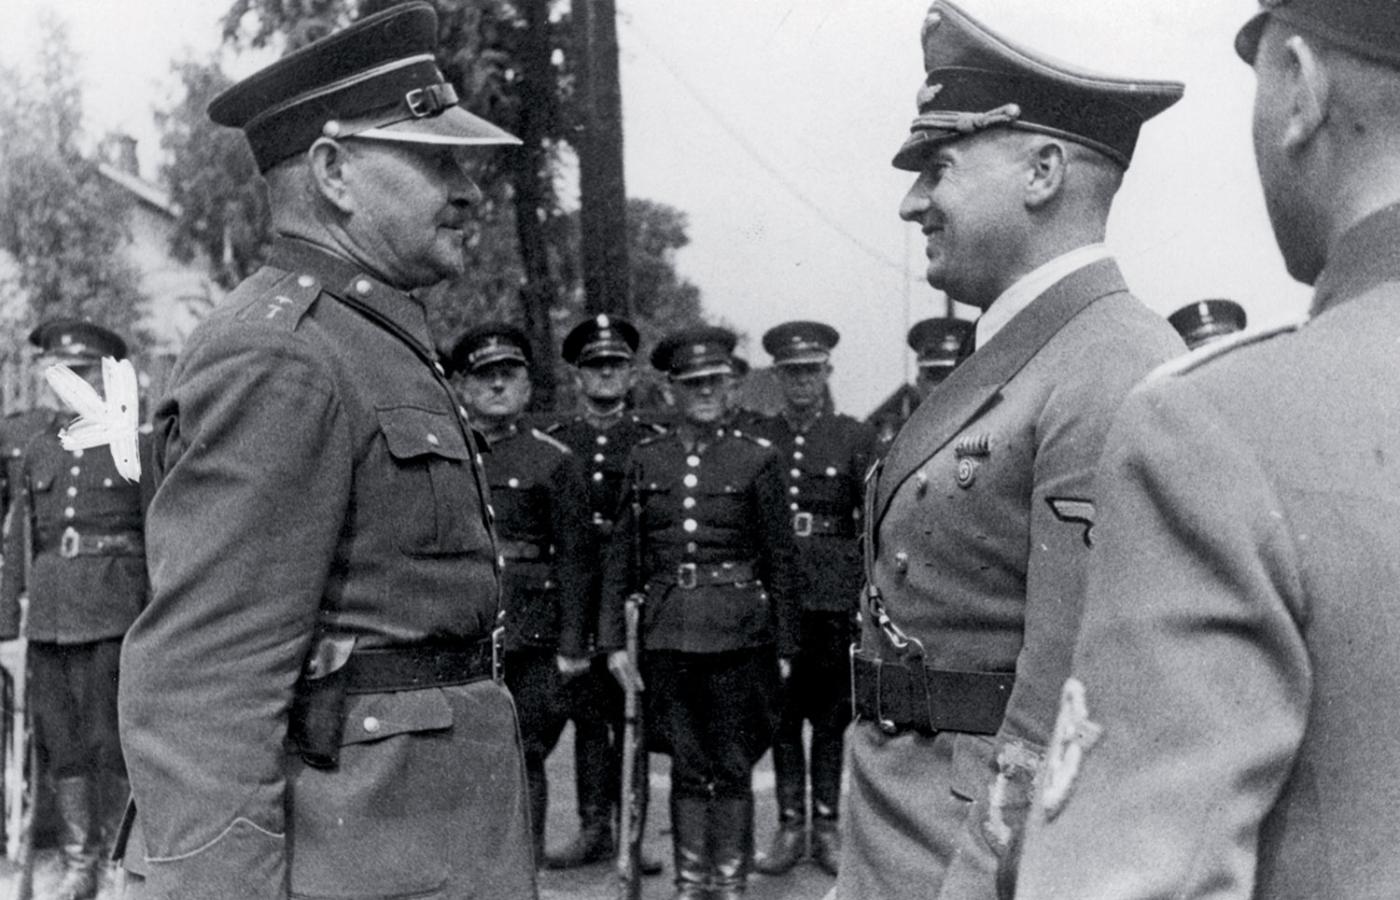 Gubernator Hans Frank (z prawej) przyjmuje meldunek od komendanta oddziału polskiej granatowej policji, 1940 r. W tle stoją polscy policjanci.